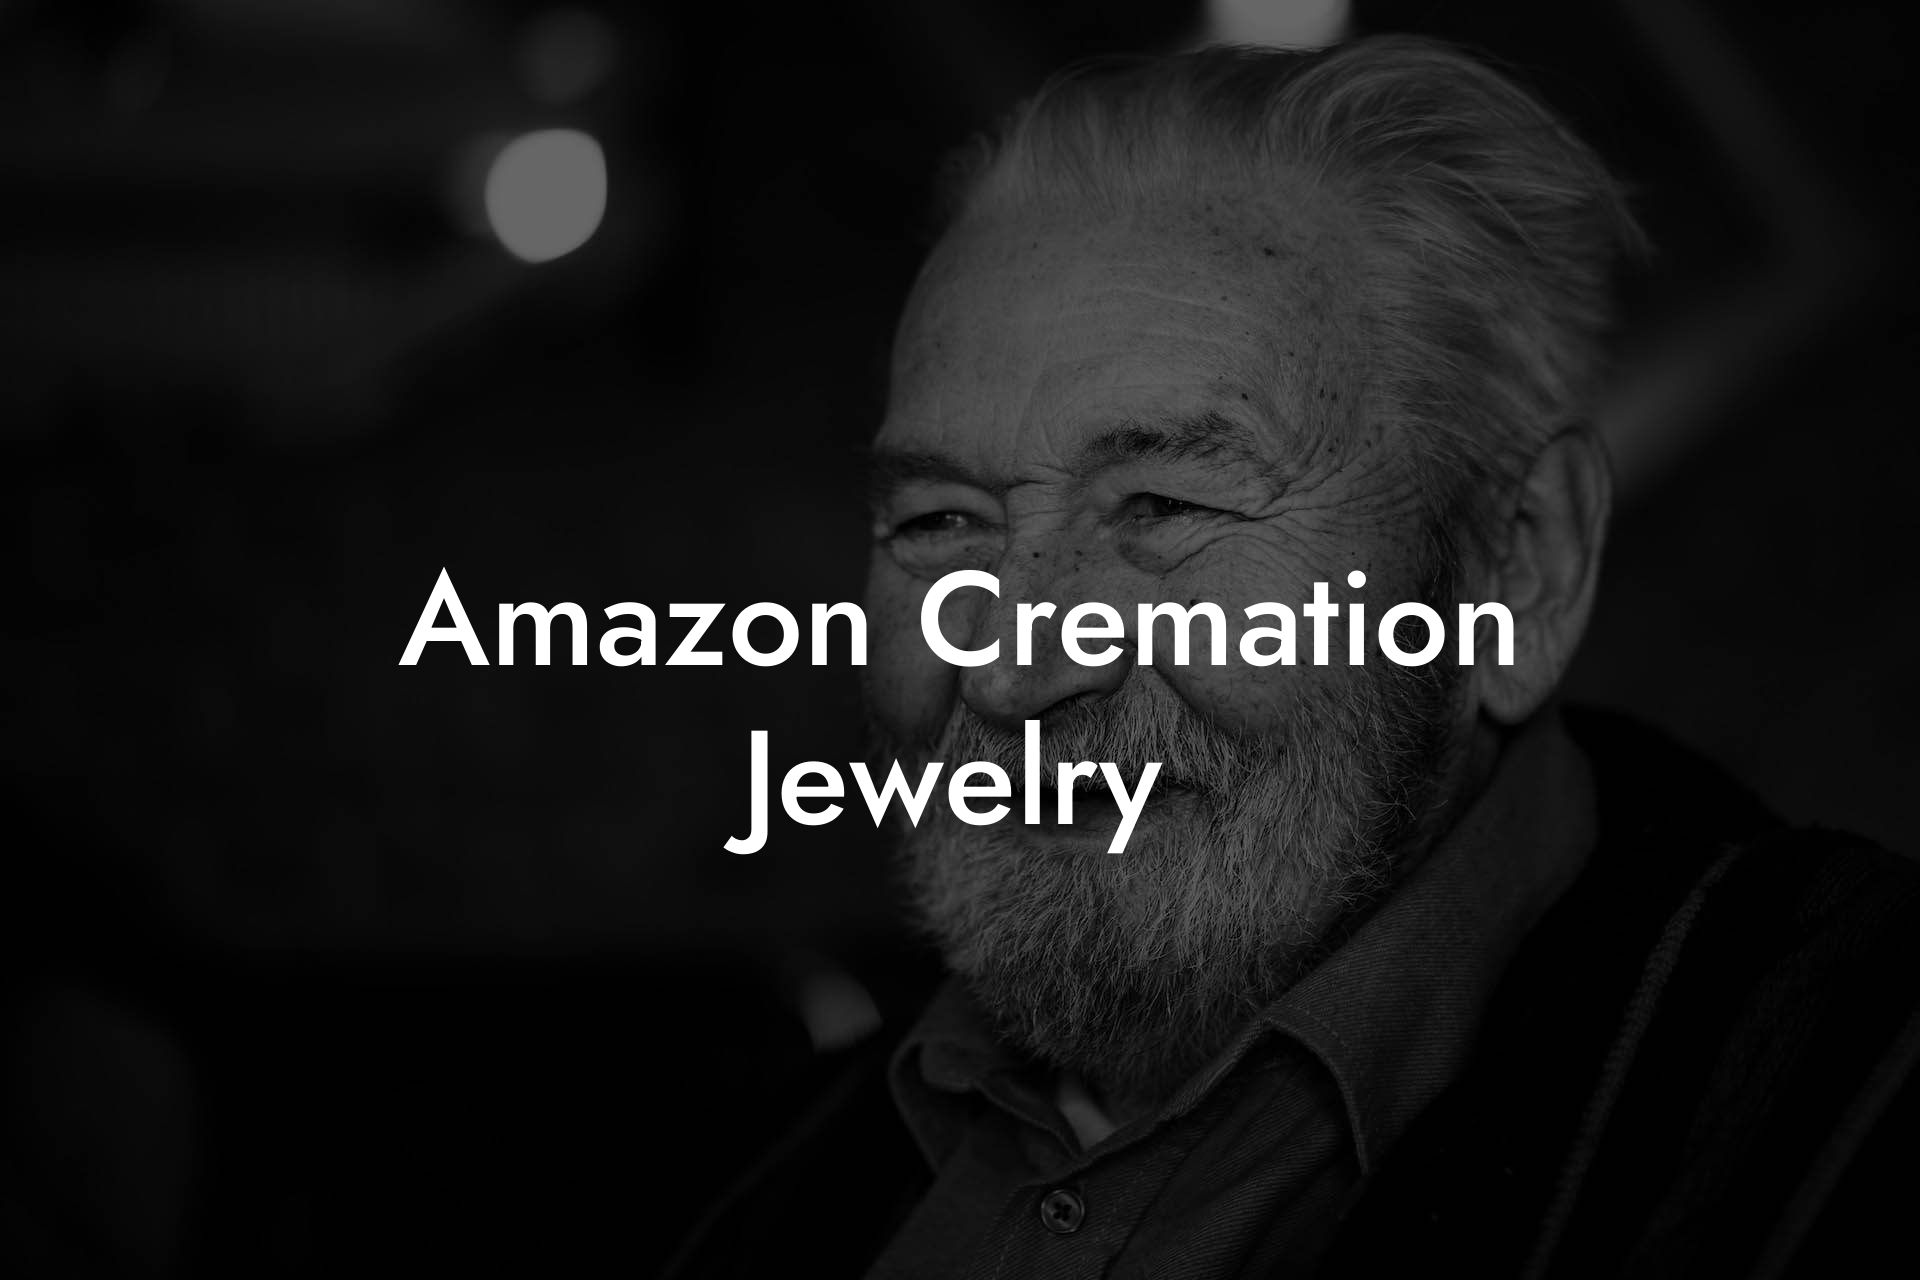 Amazon Cremation Jewelry